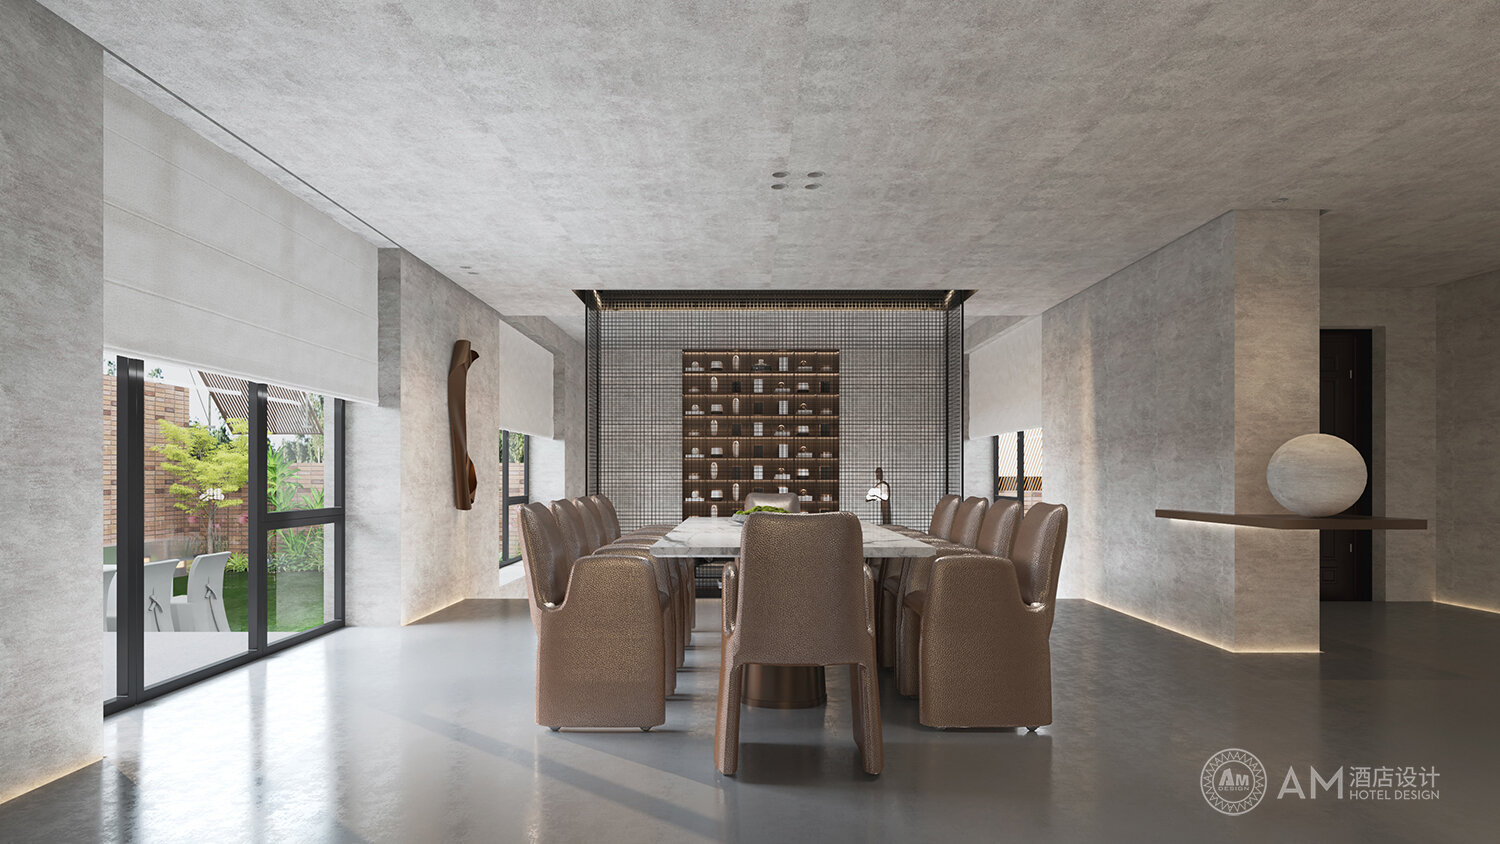 AM DESIGN | Living room design of qianjianyuan residential building in Jixian, Tianjin